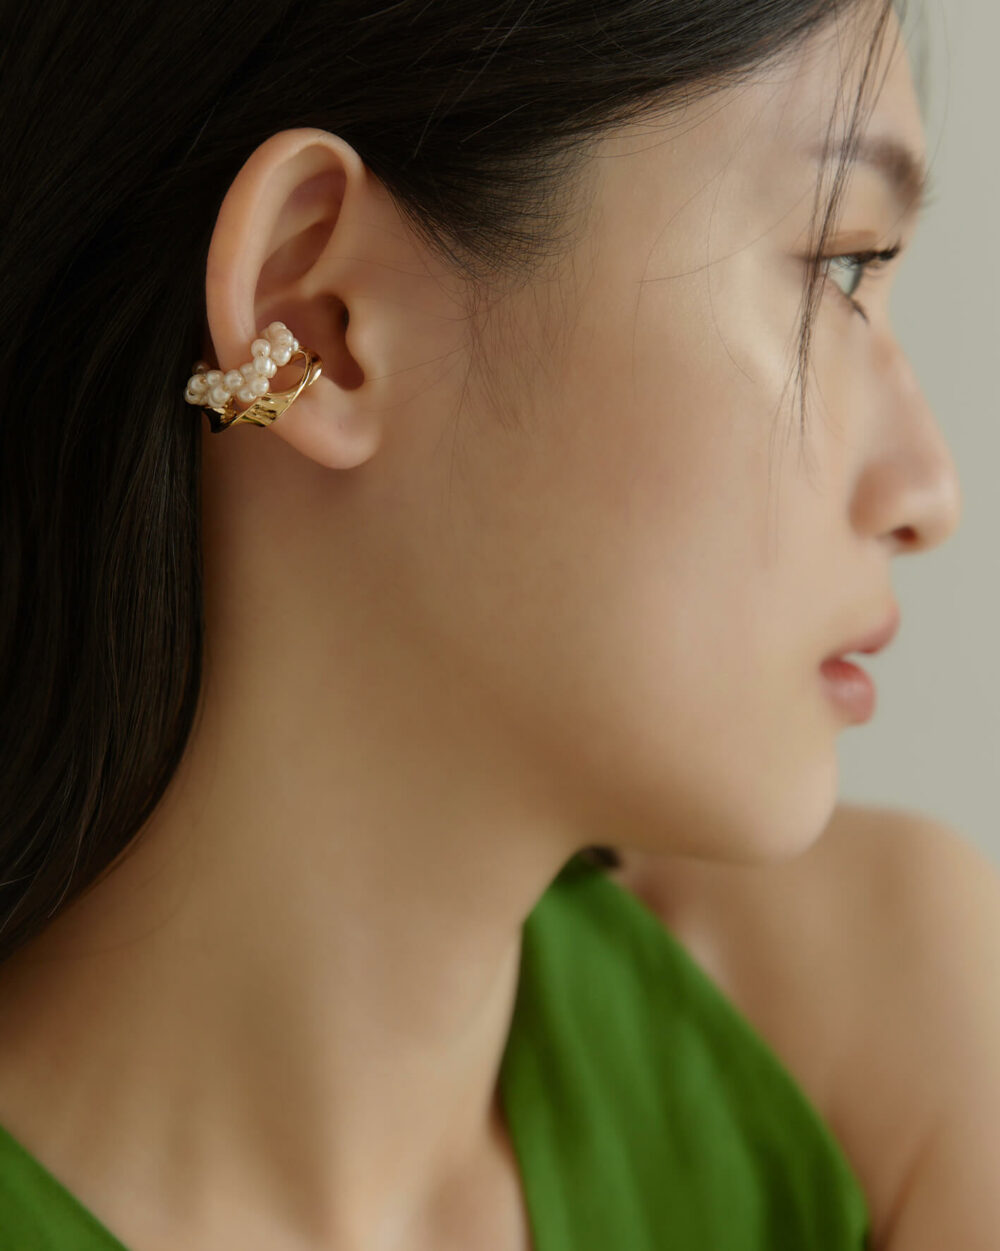 Eco安珂,韓國飾品,韓國耳環,韓國耳骨夾,韓國耳扣,耳夾式耳環,耳骨夾,耳扣,耳骨耳環,耳窩耳環,無耳洞耳環,珍珠耳骨夾